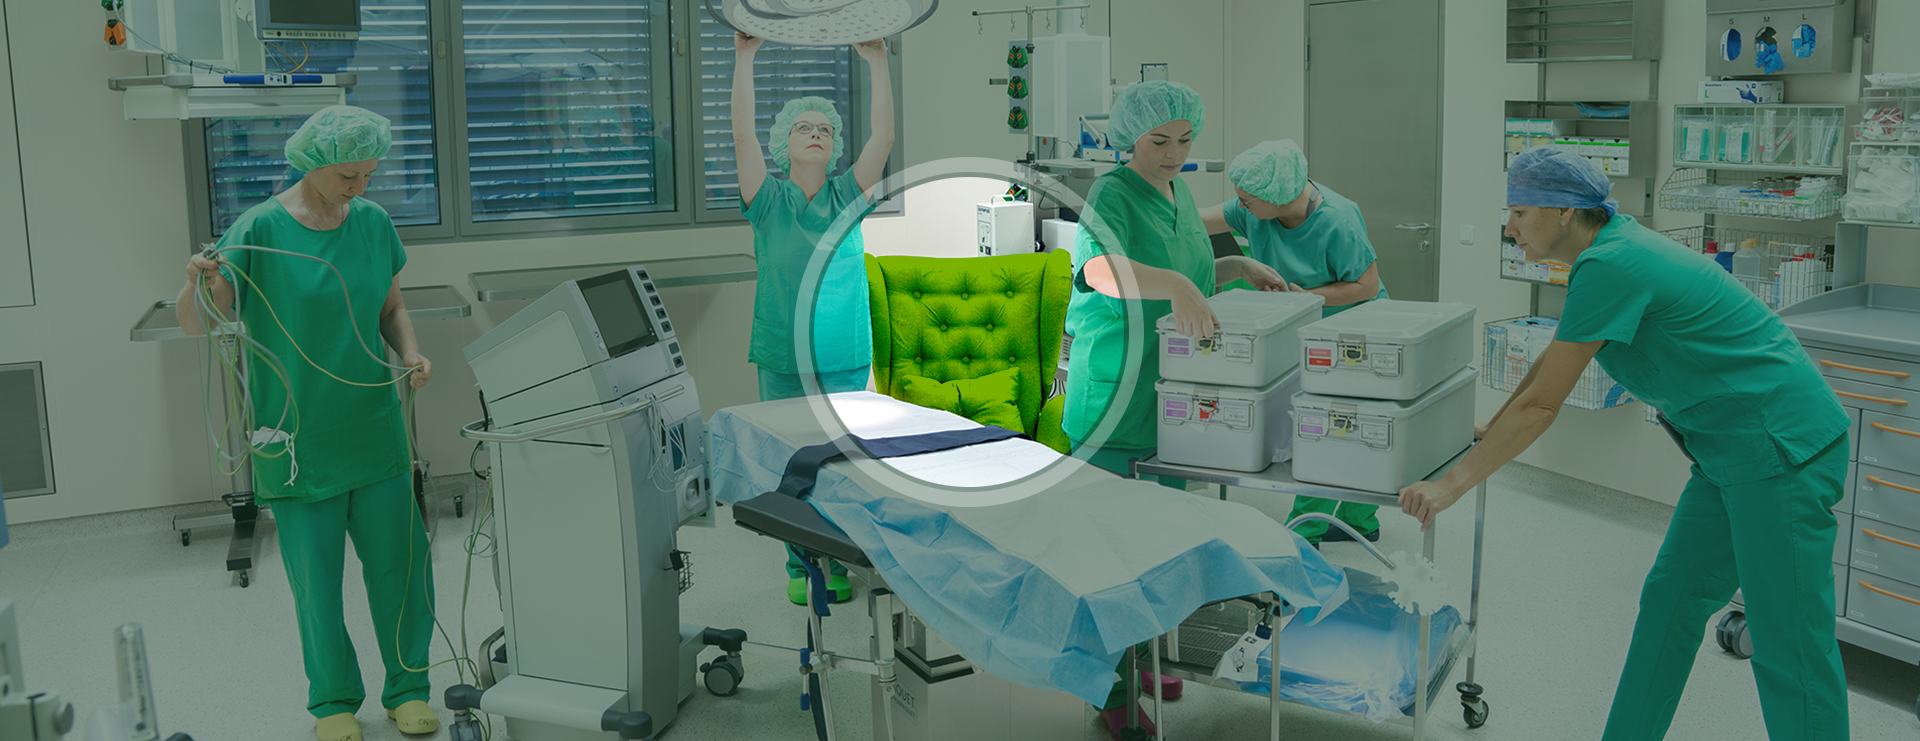 Dein Lausitz im OP! – Stellenangebote für Chirurgen & OP-Personal in der Lausitz.